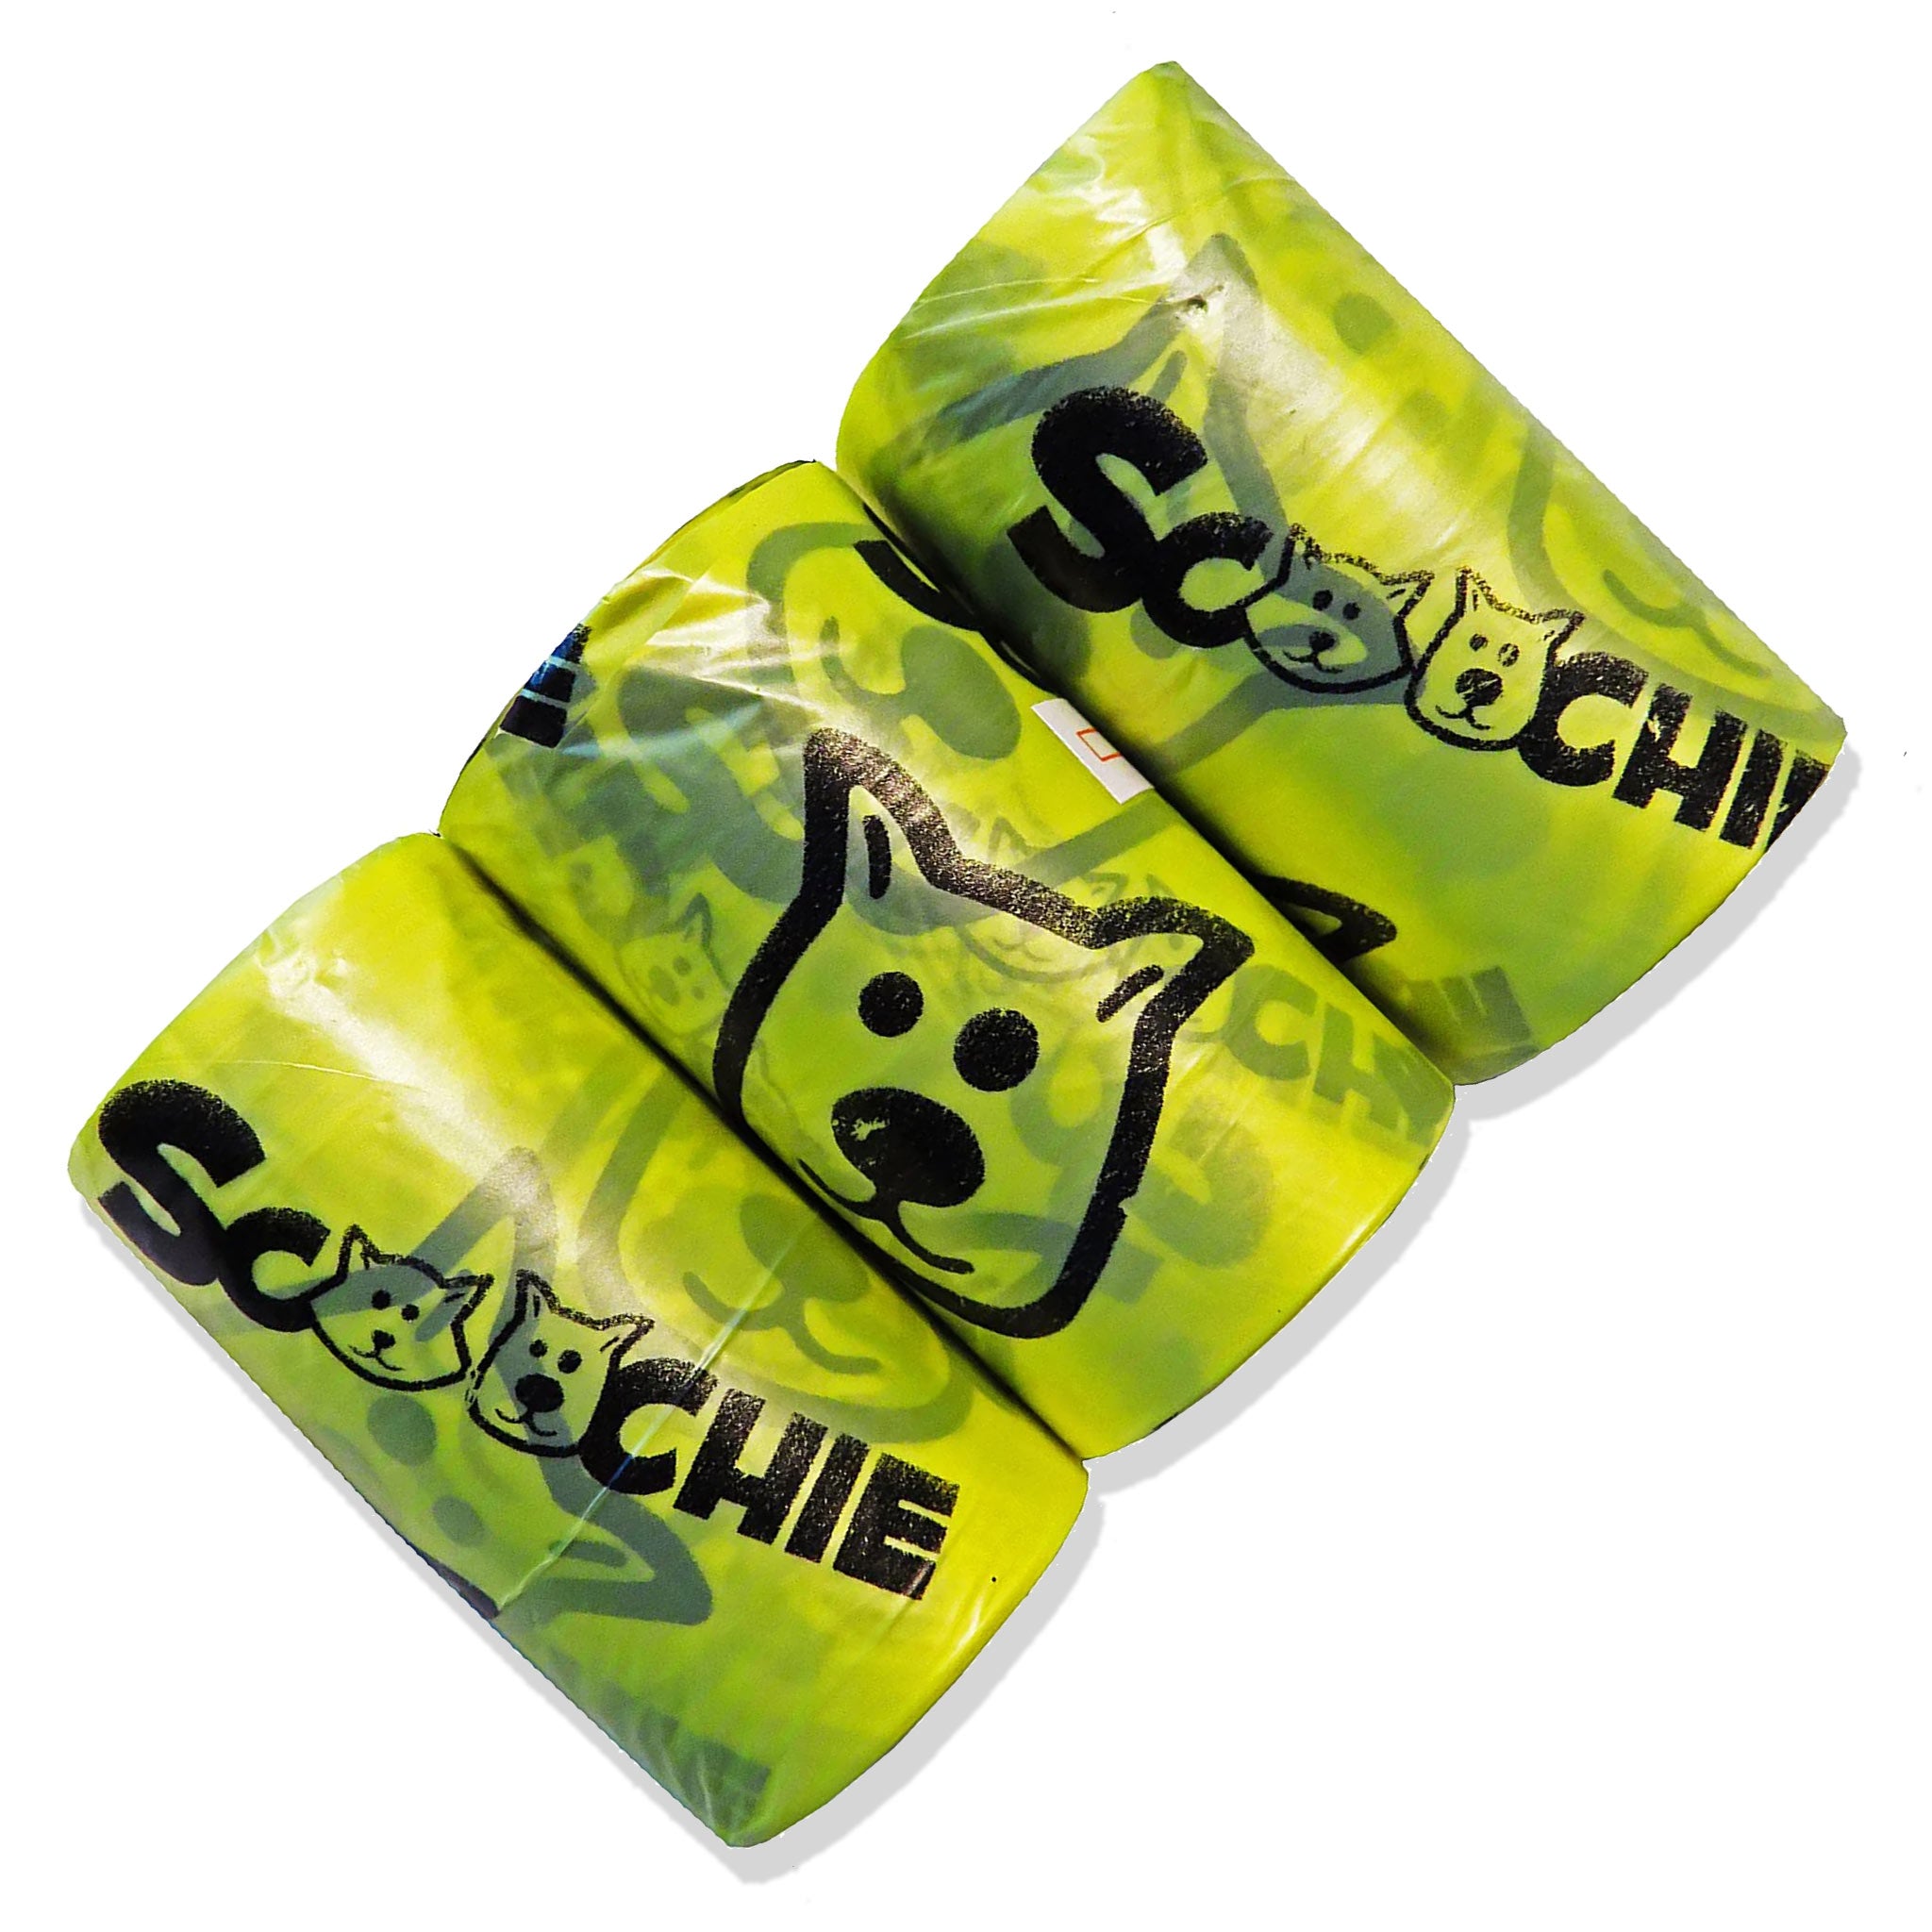 3 Pack Waste Bag Refill for Scoochie Waste Bag Dispenser